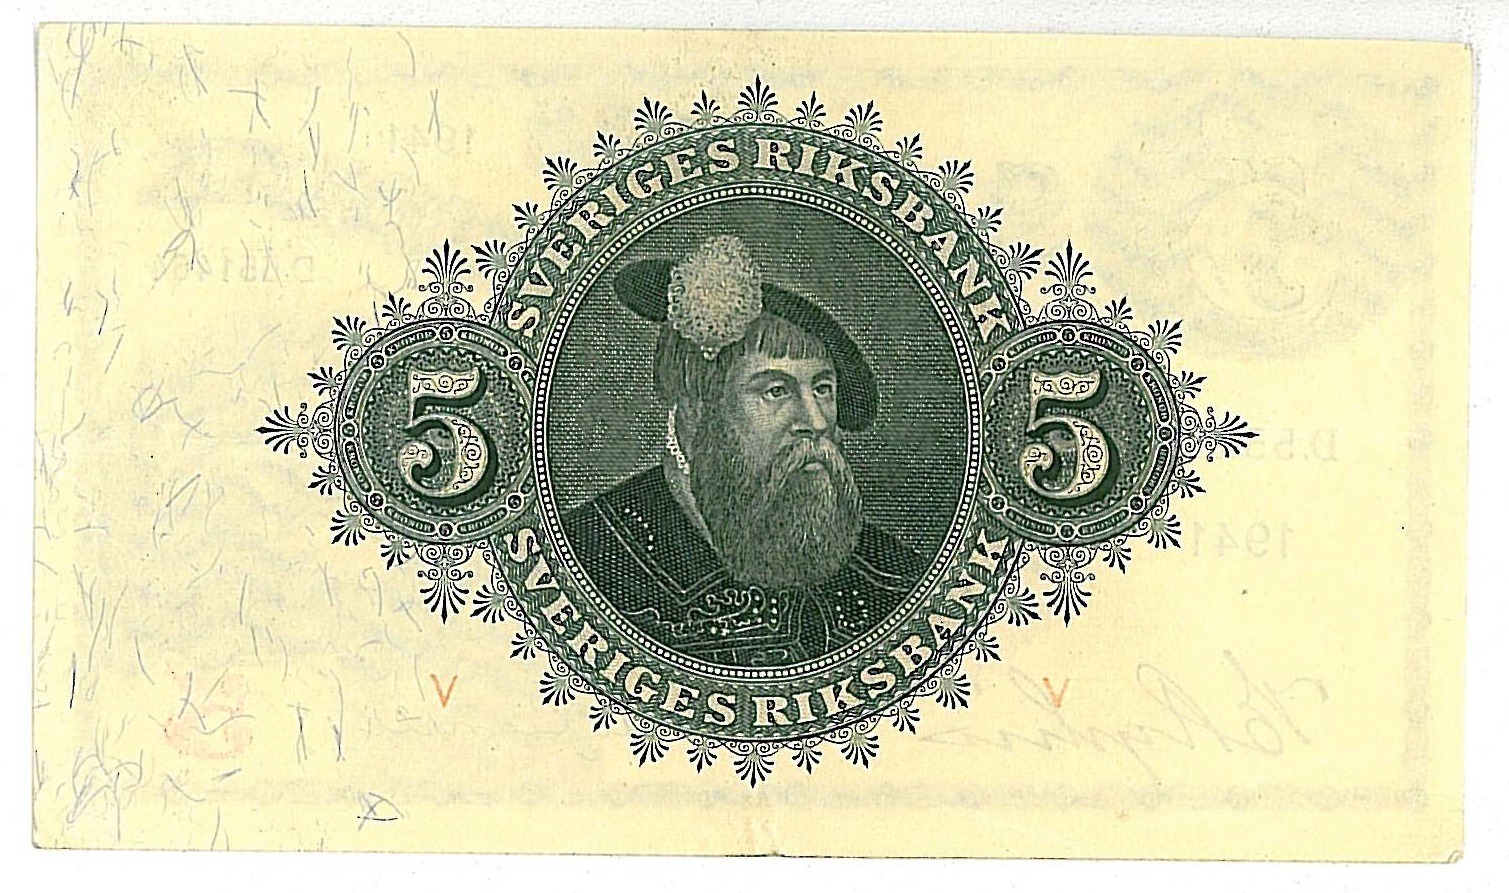 5 kronor 1941